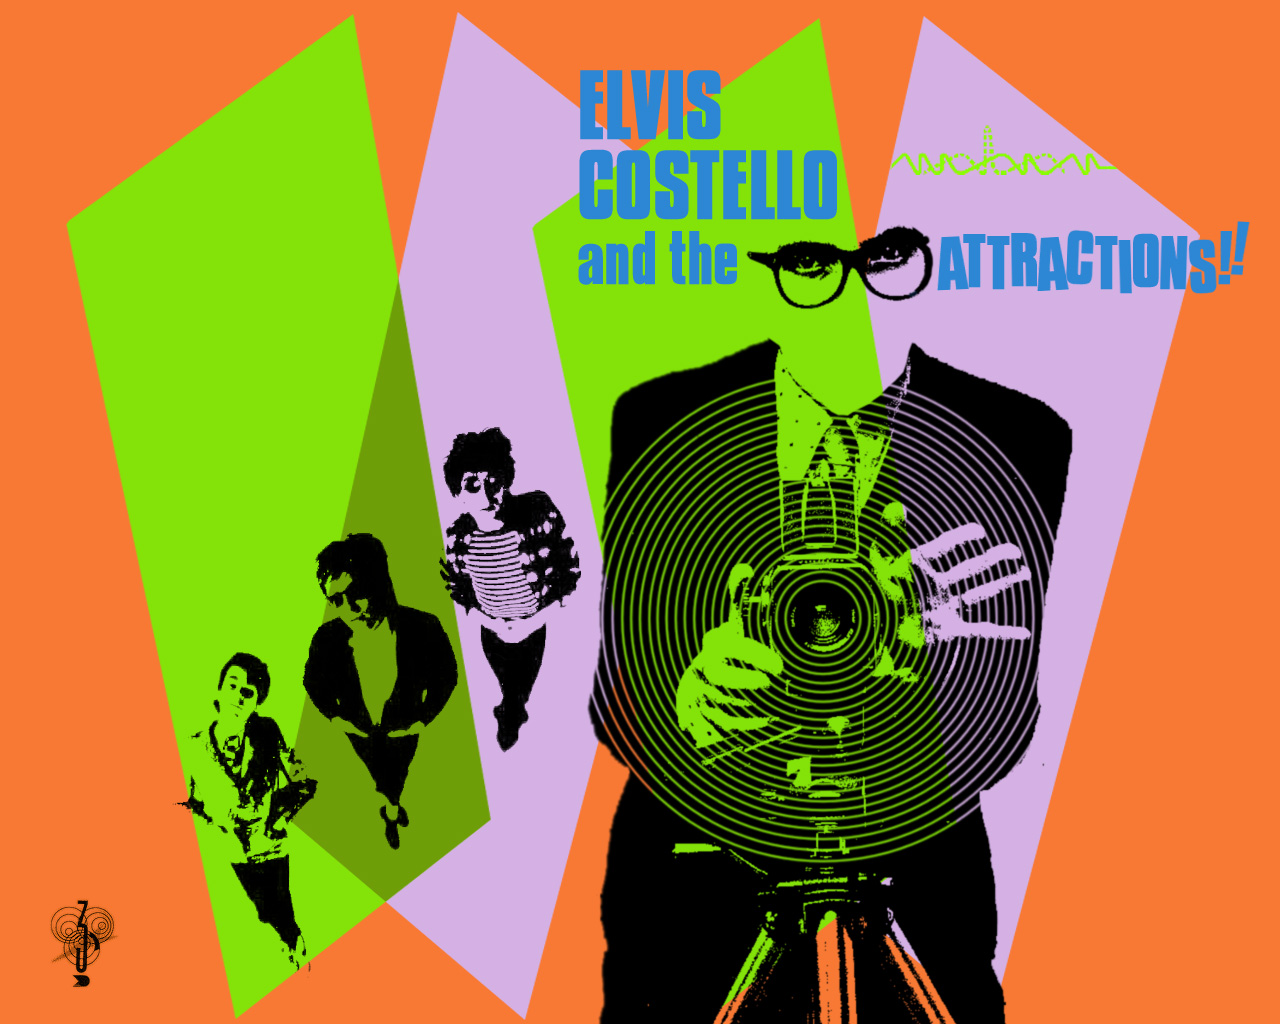 Desktop wallpaper for all - Elvis Costello Fan Forum